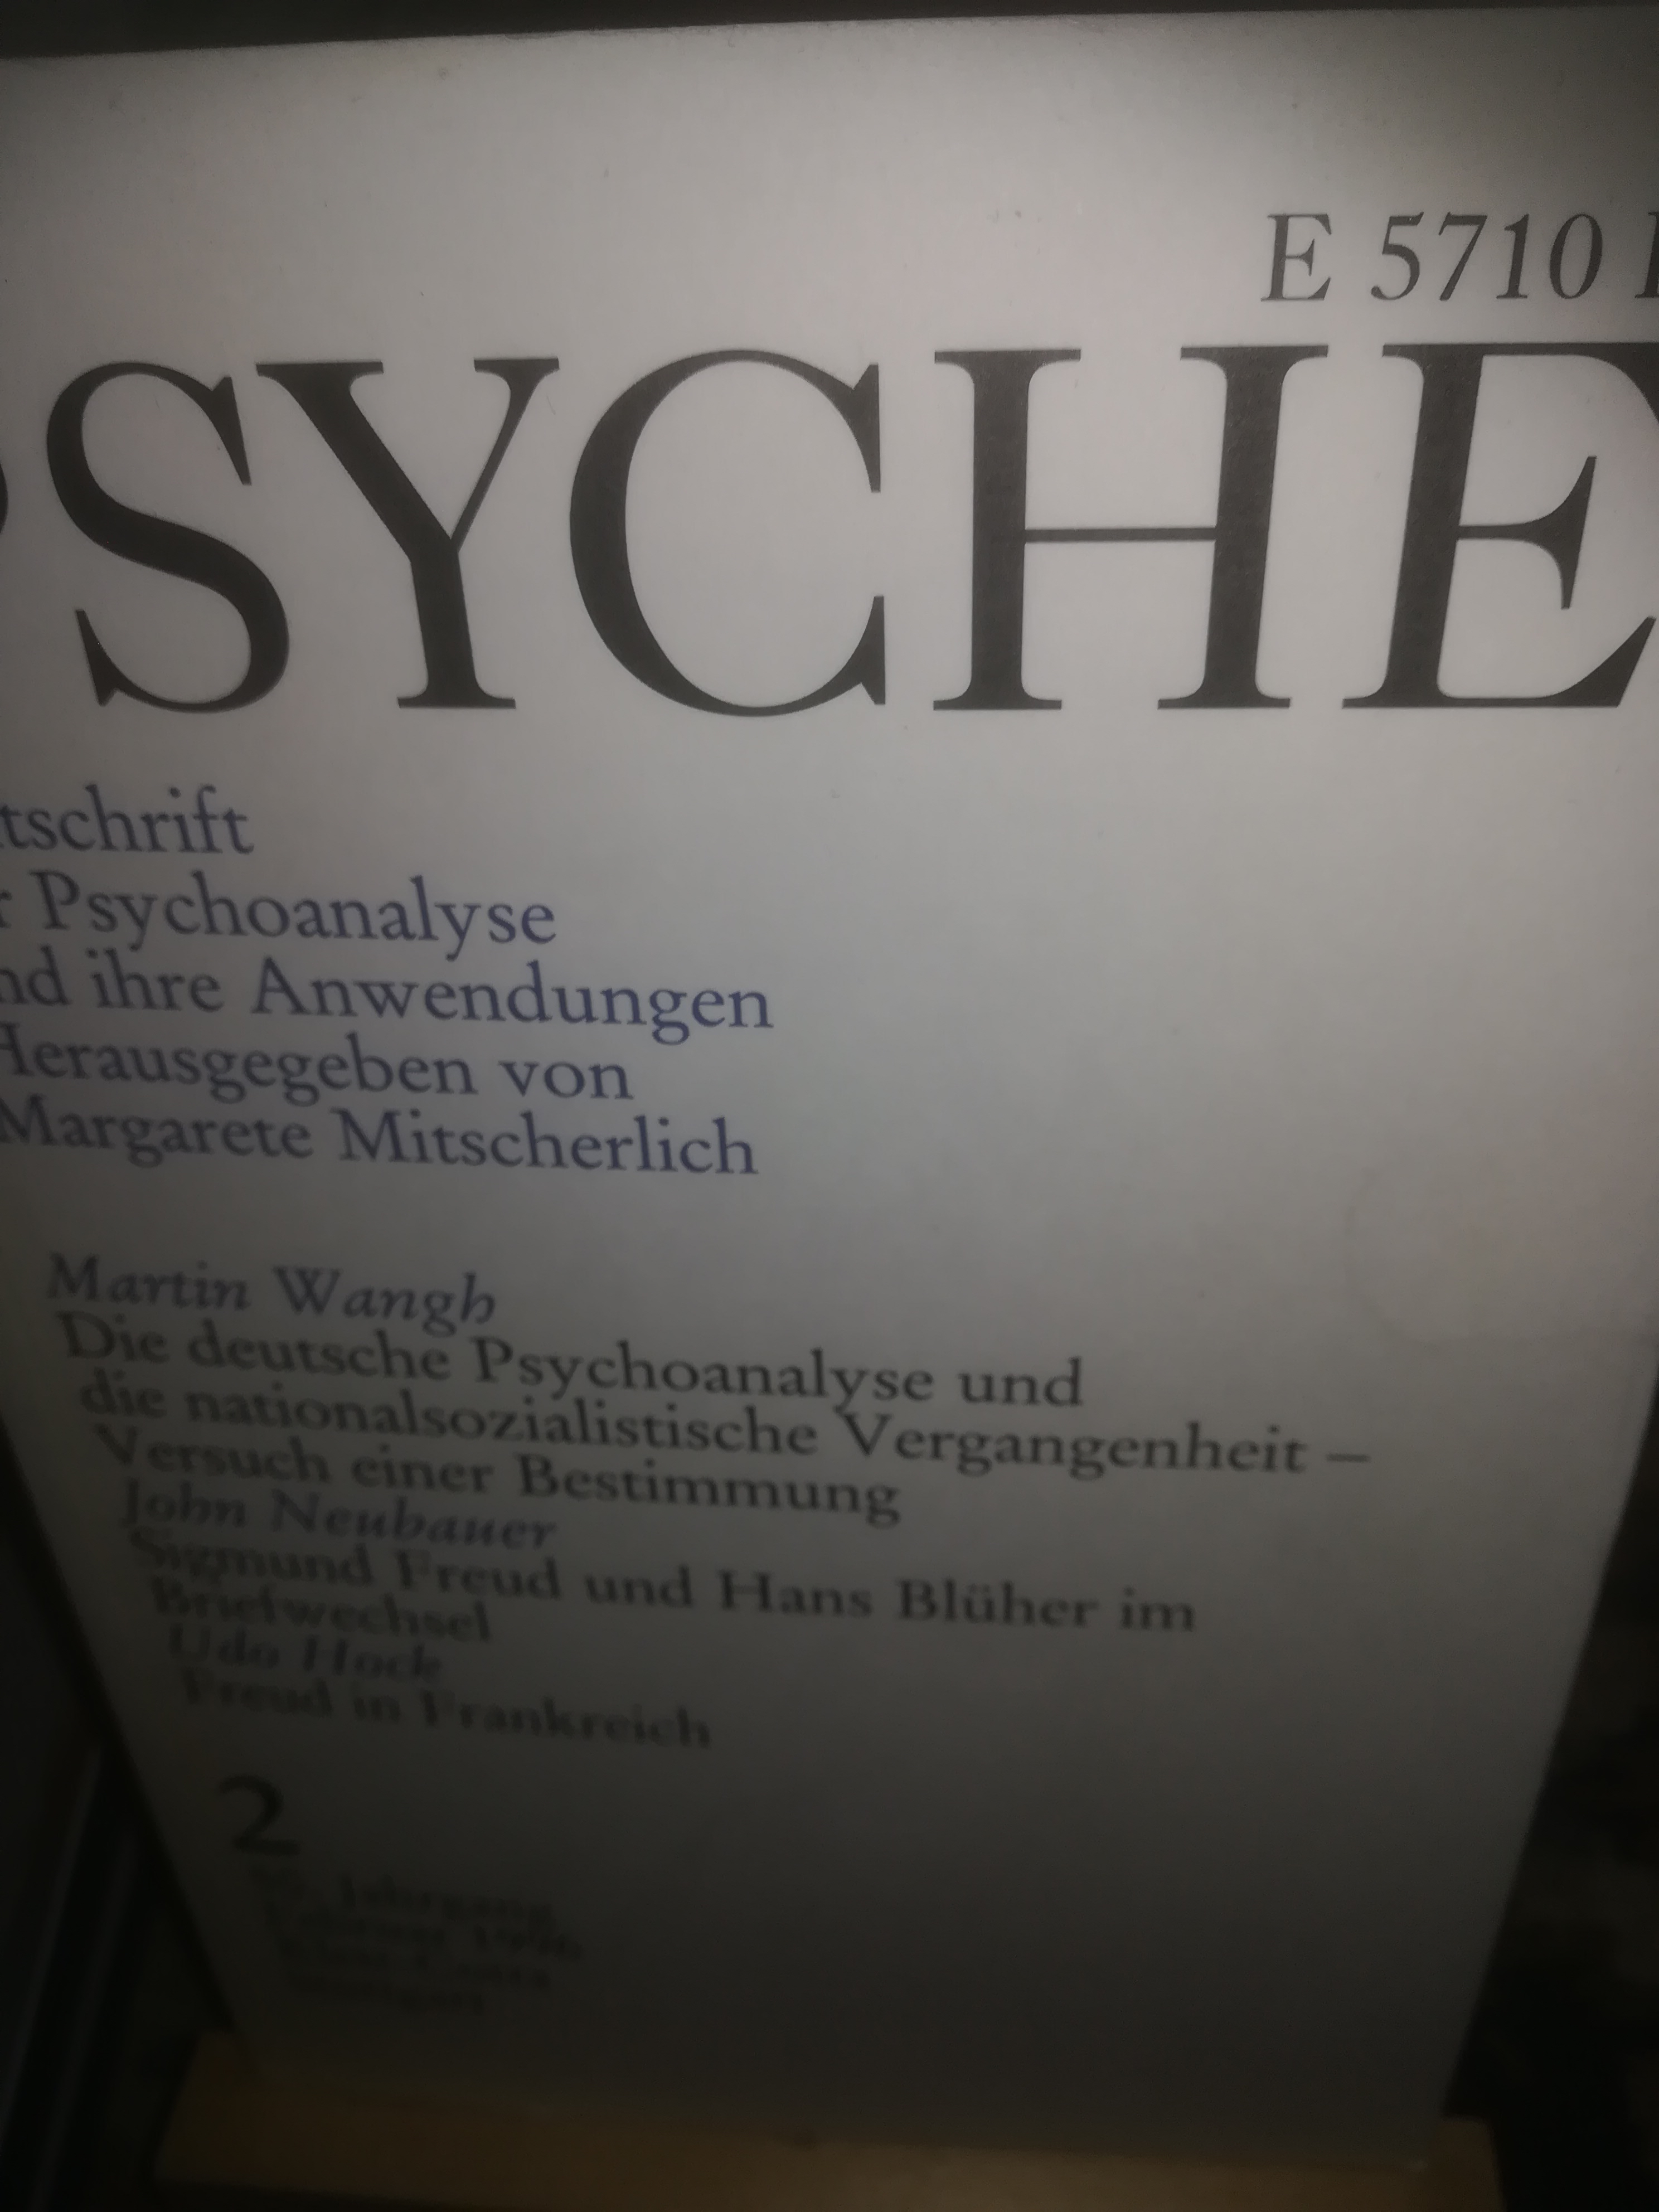 Psyche, Zeitschrift für Psychoanalyse und ihre Anwensungen, 2, 50. Jahrgang, Februar 1996 - Mitscherlich Alexander